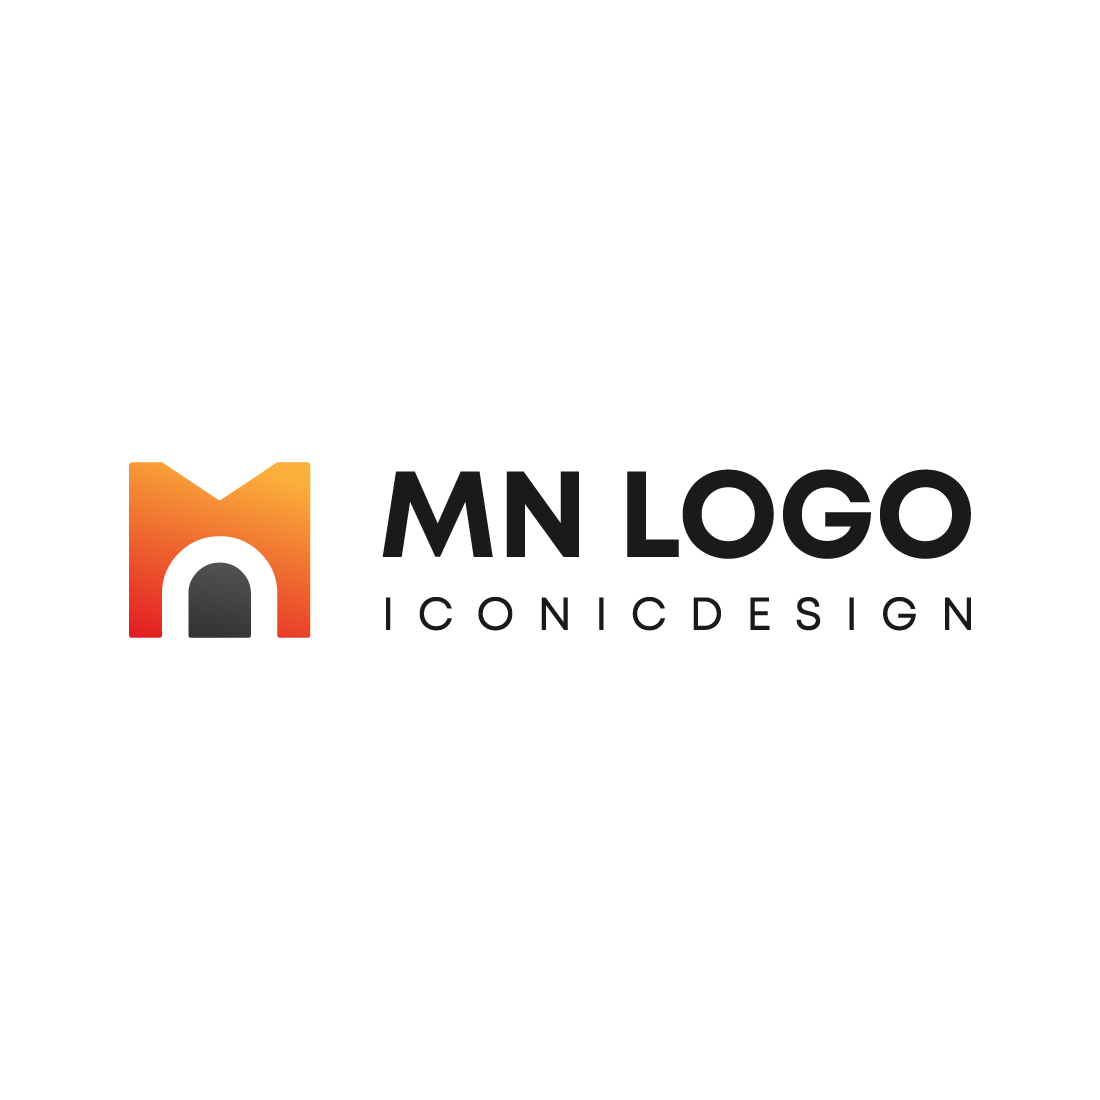 MN logo Design preview image.